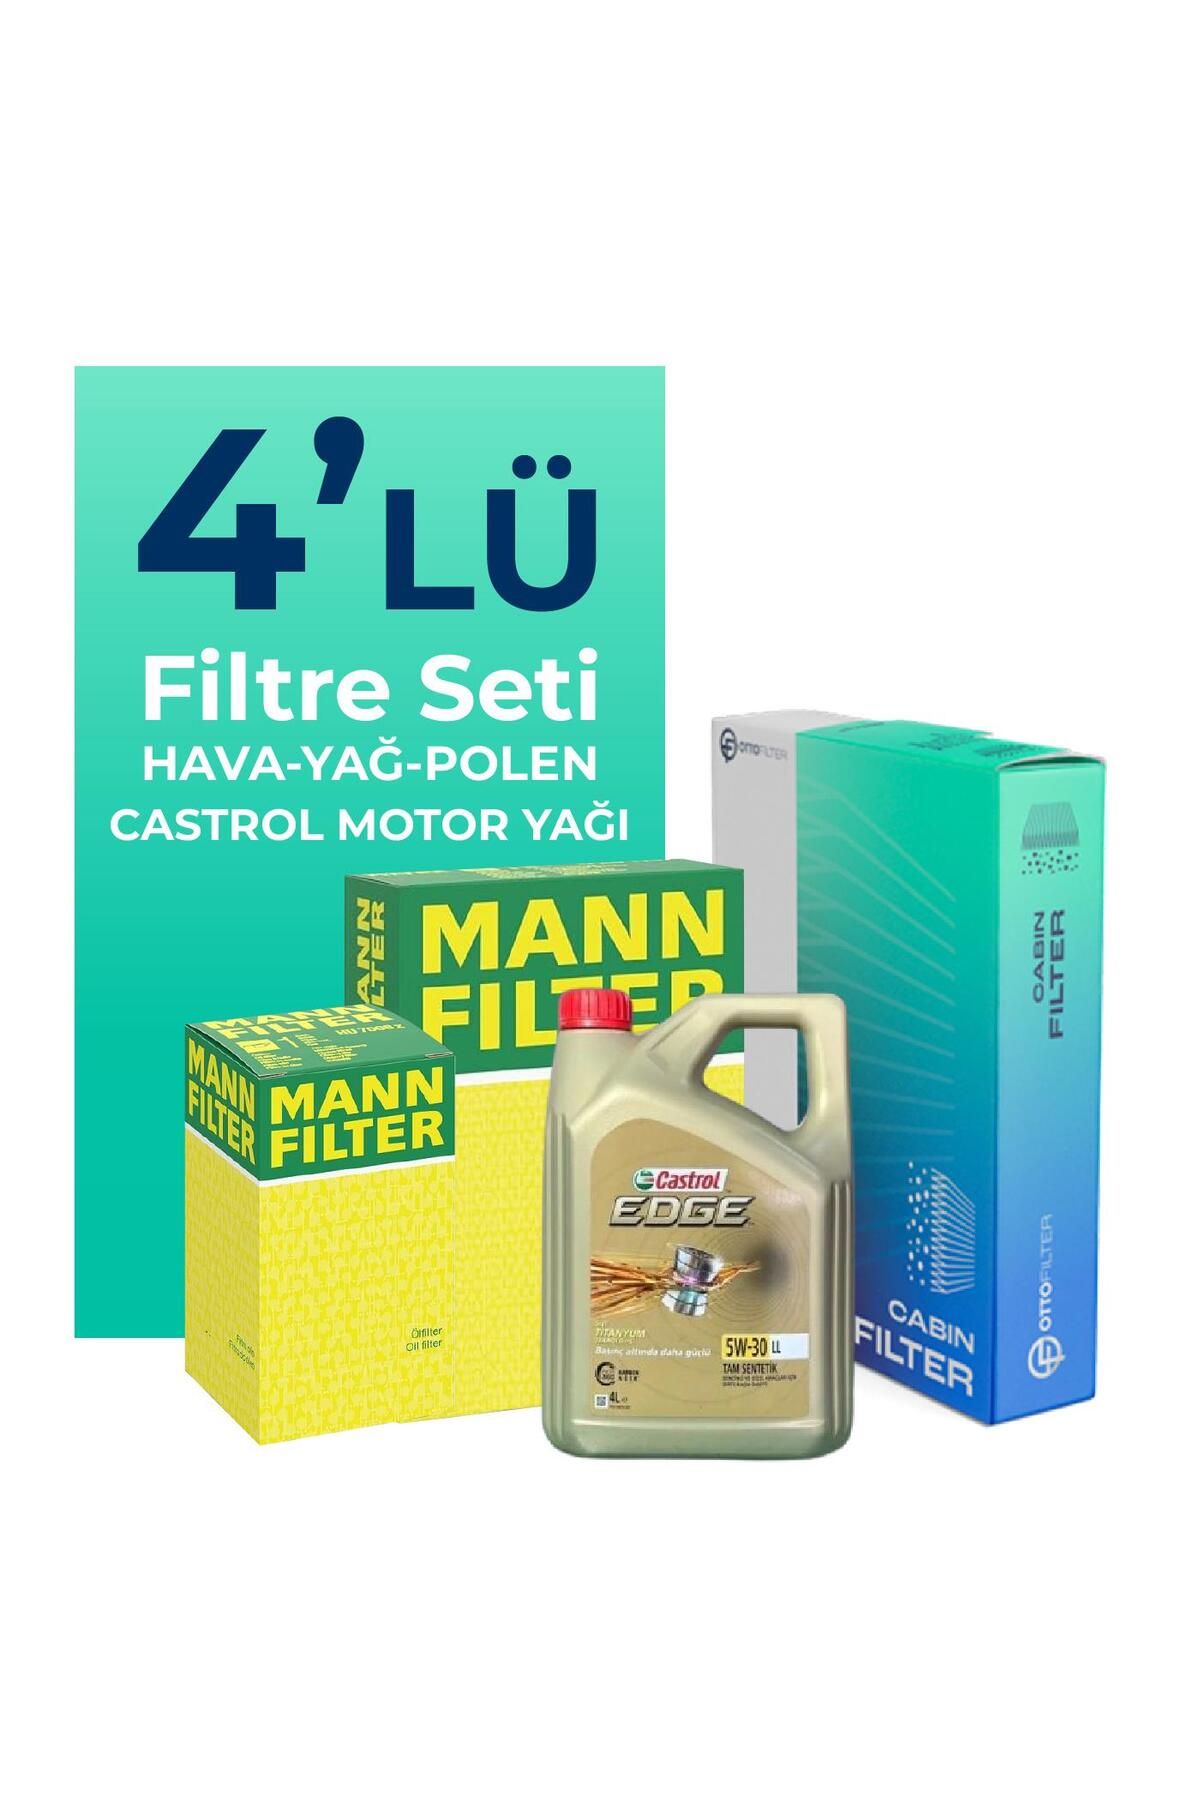 Mann Filter MANN Suzuki Swift 1.2 Filtre Bakım Seti Castrol Motor Yağlı (2017-2023) 4 Lü